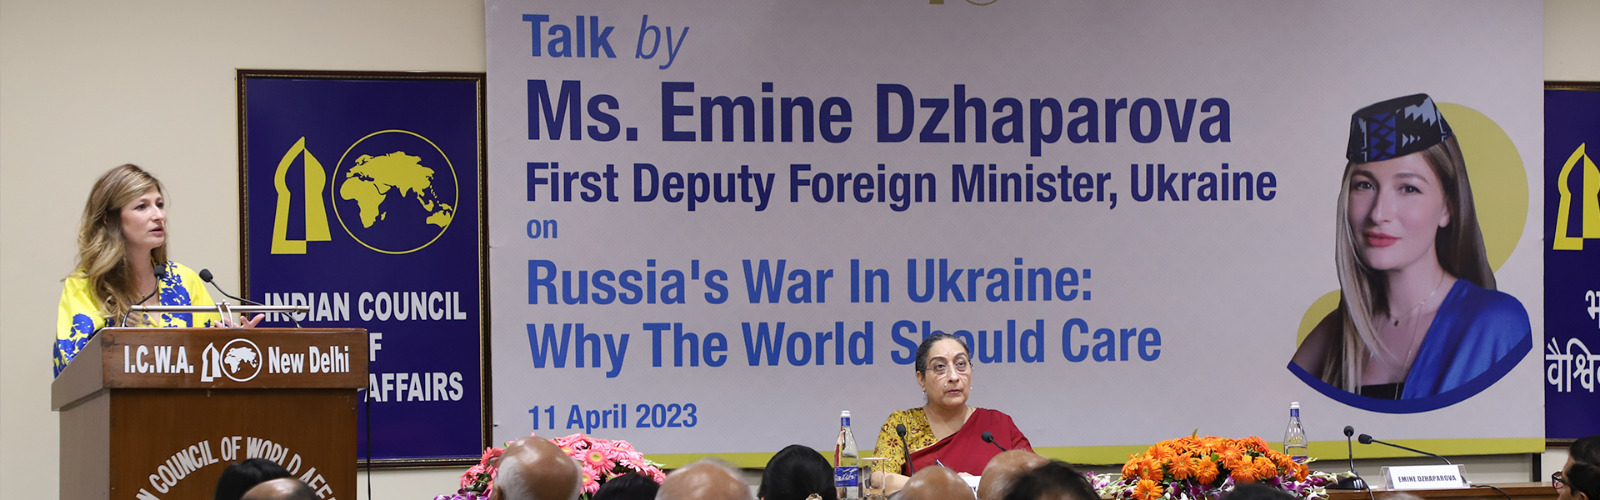 यूक्रेन की पहली उप विदेश मंत्री सुश्री एमीन दझापरोवा सप्रू हाउस में 11 अप्रैल 2023 को 